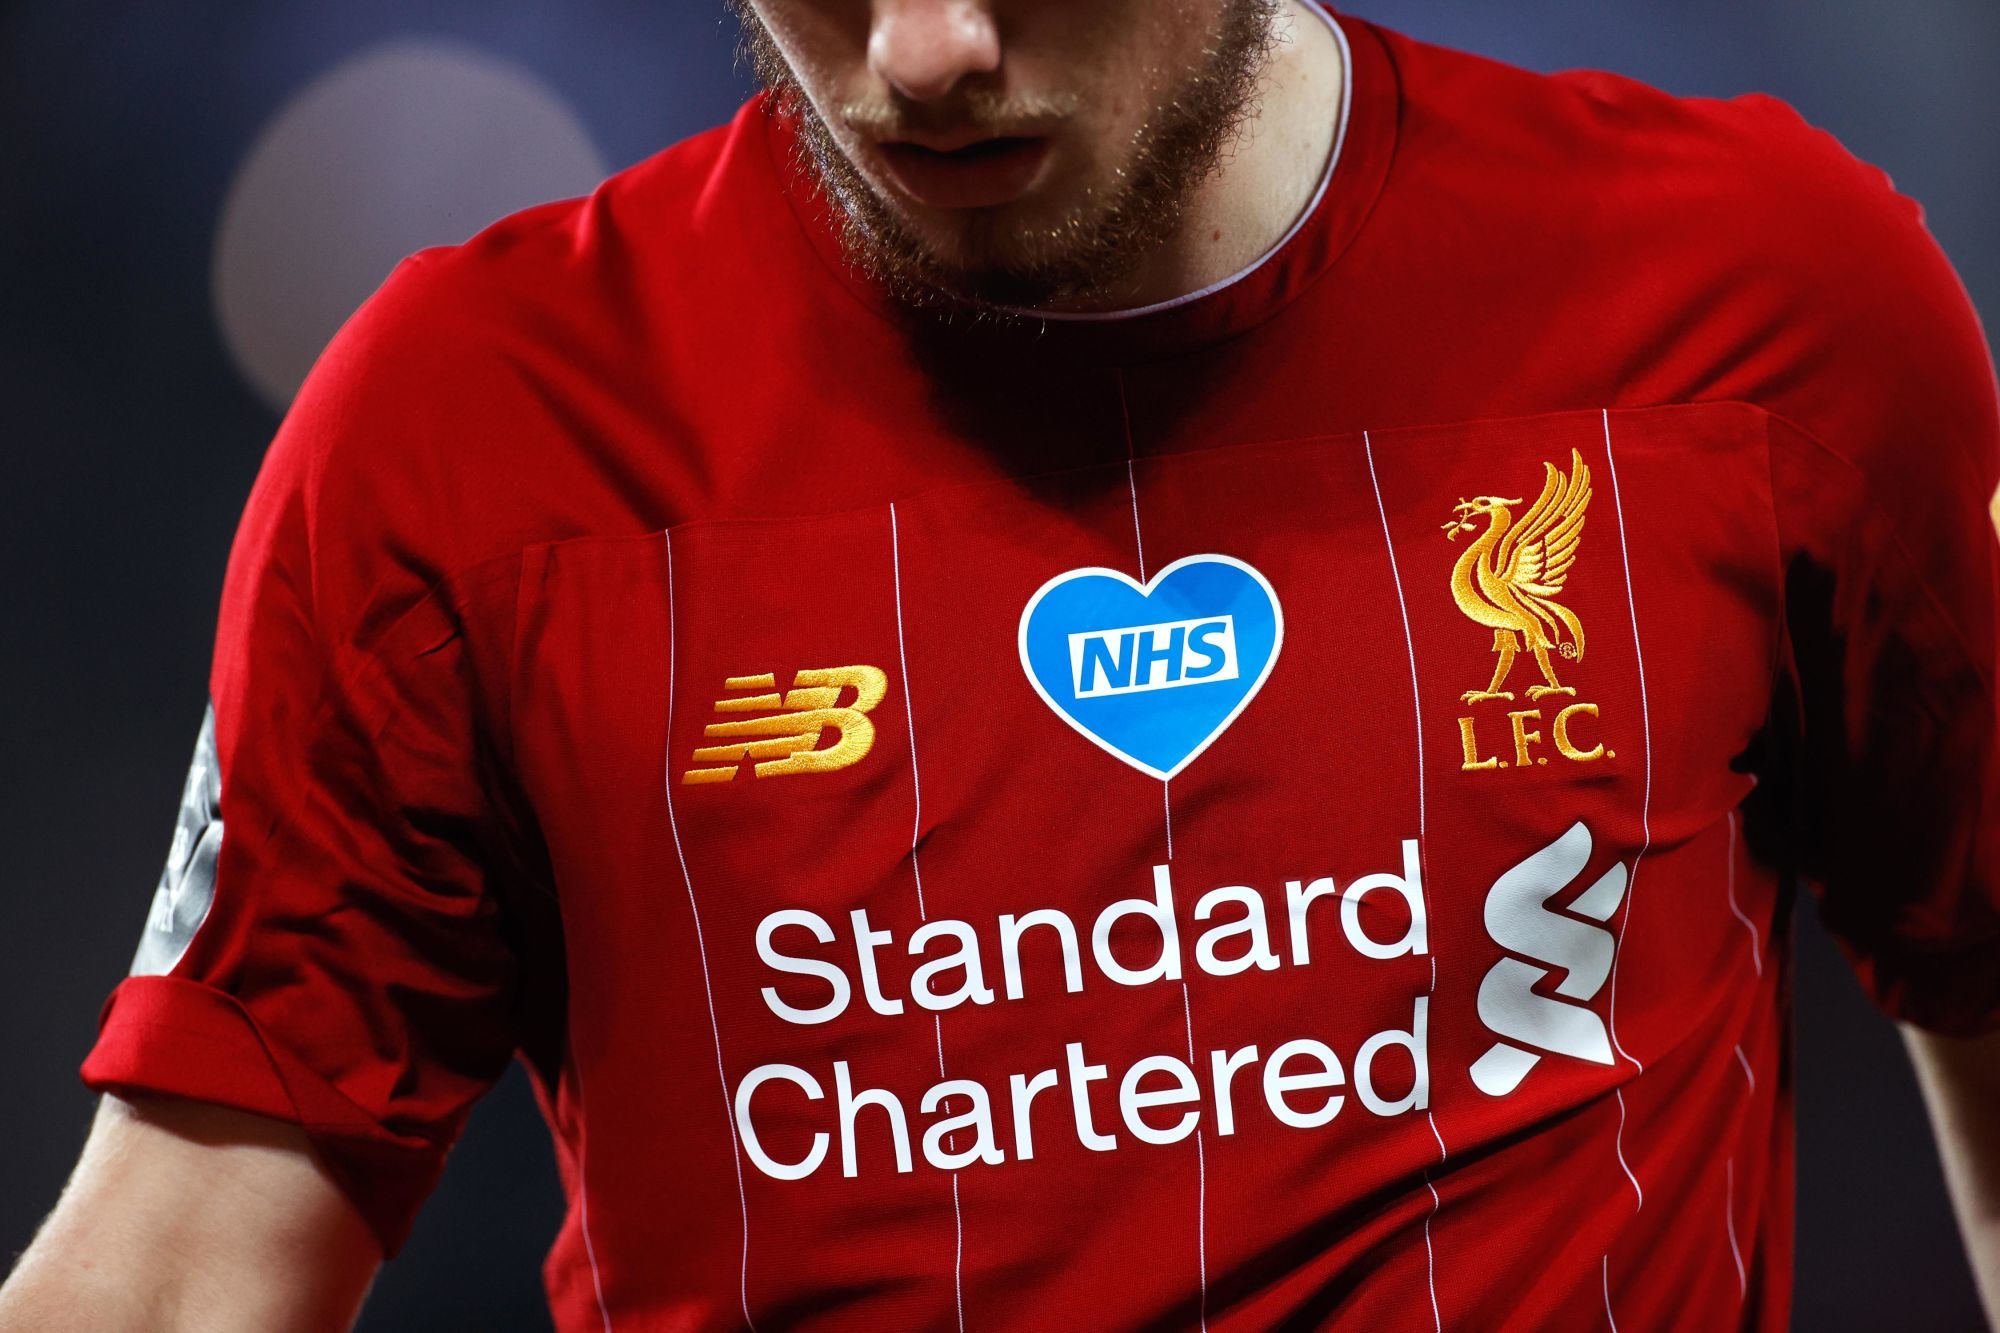 Sponsor maillot Liverpool est Standard Chartered